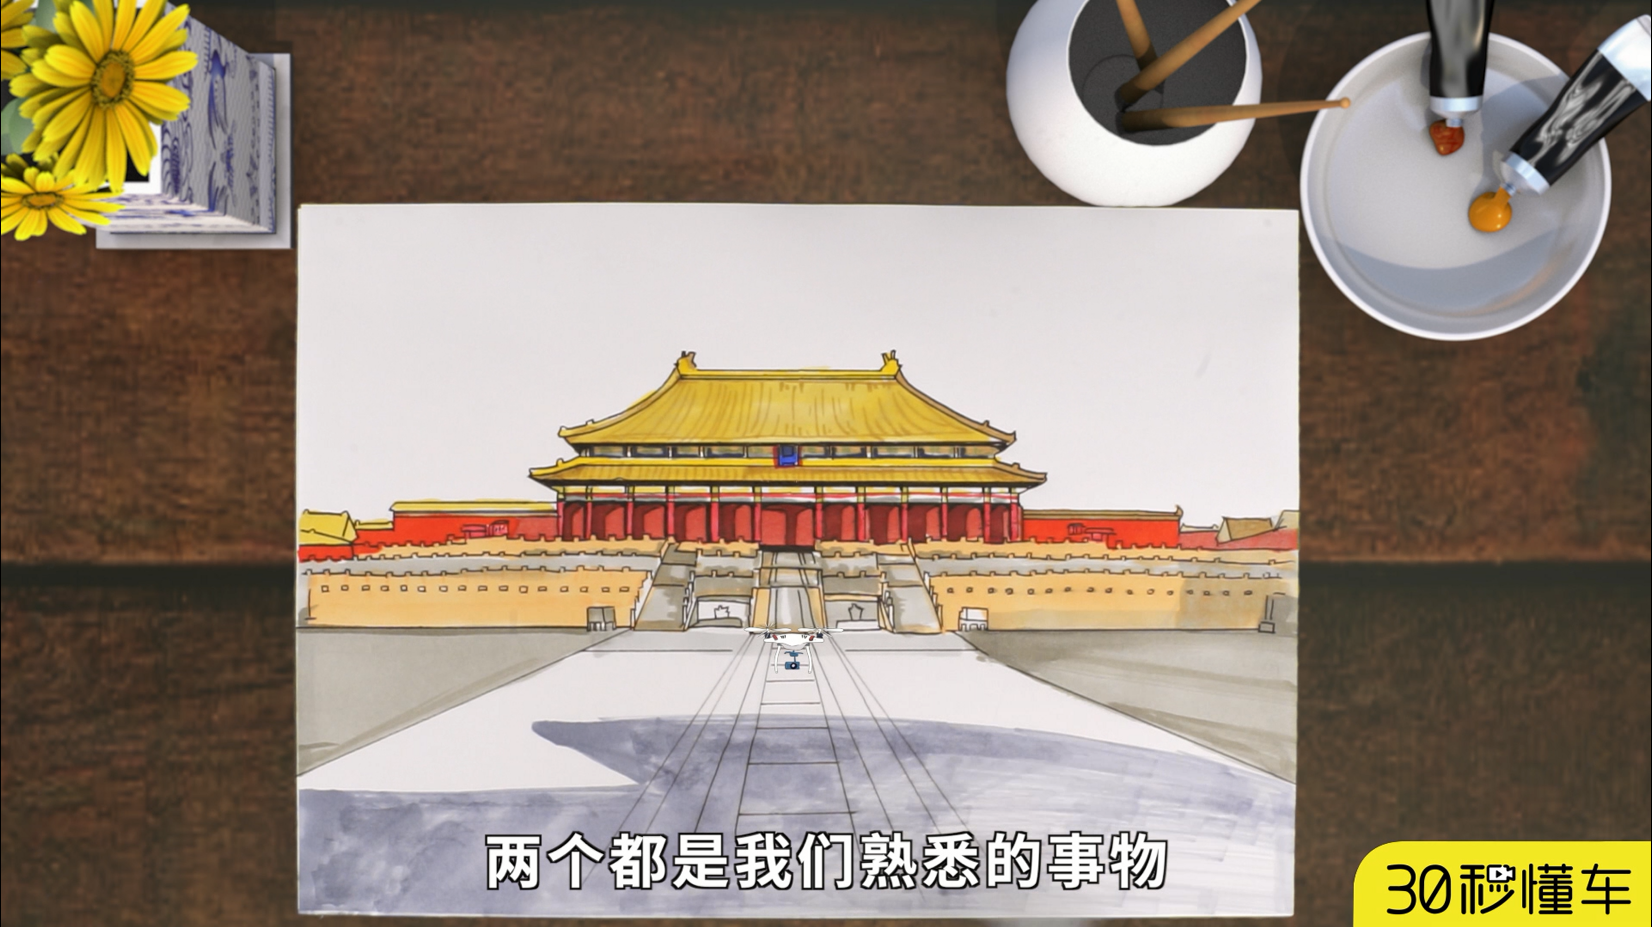 标题以手绘的名义 红旗H5和故宫相约在这个画卷中